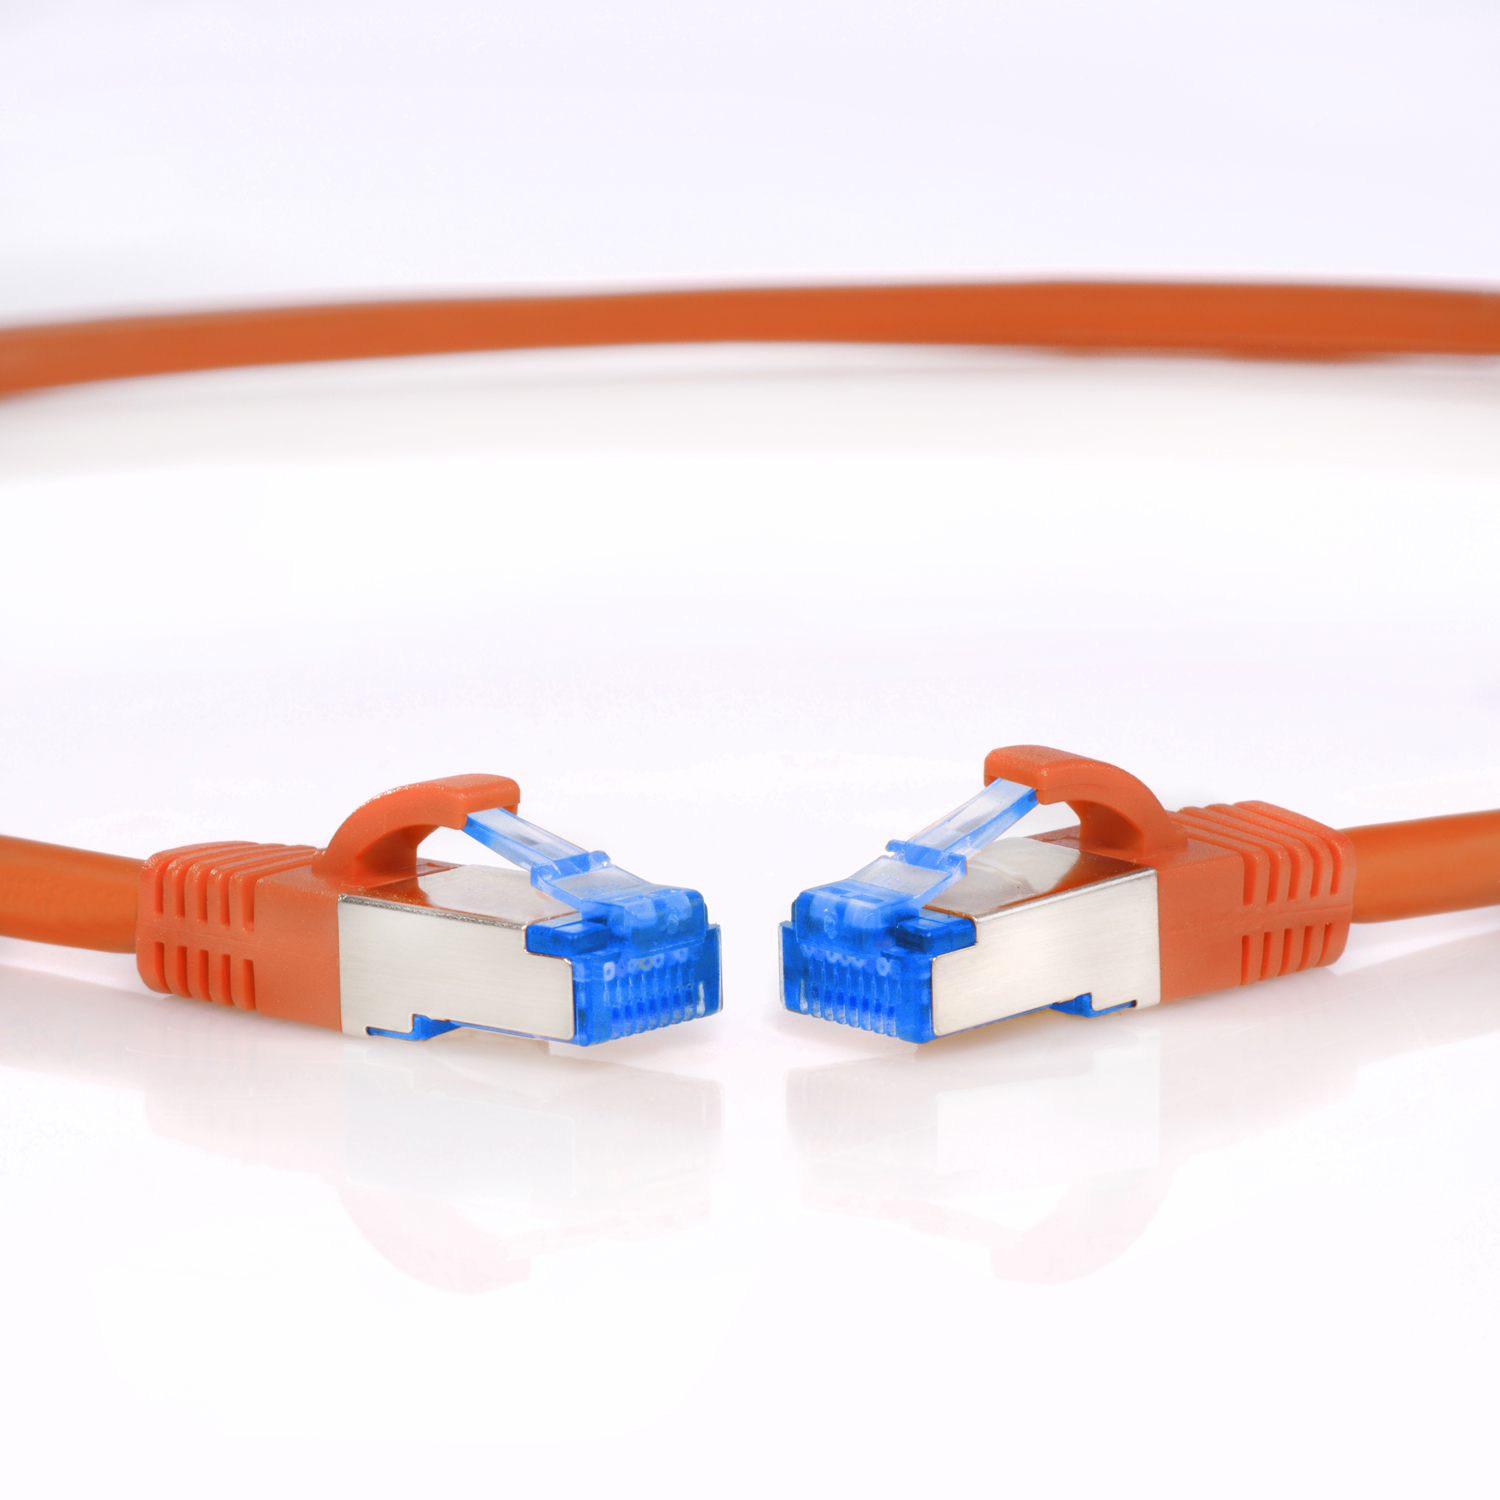 Netzwerkkabel, 7,5 m Patchkabel / S/FTP Netzwerkkabel 7,5m orange, TPFNET 10GBit,